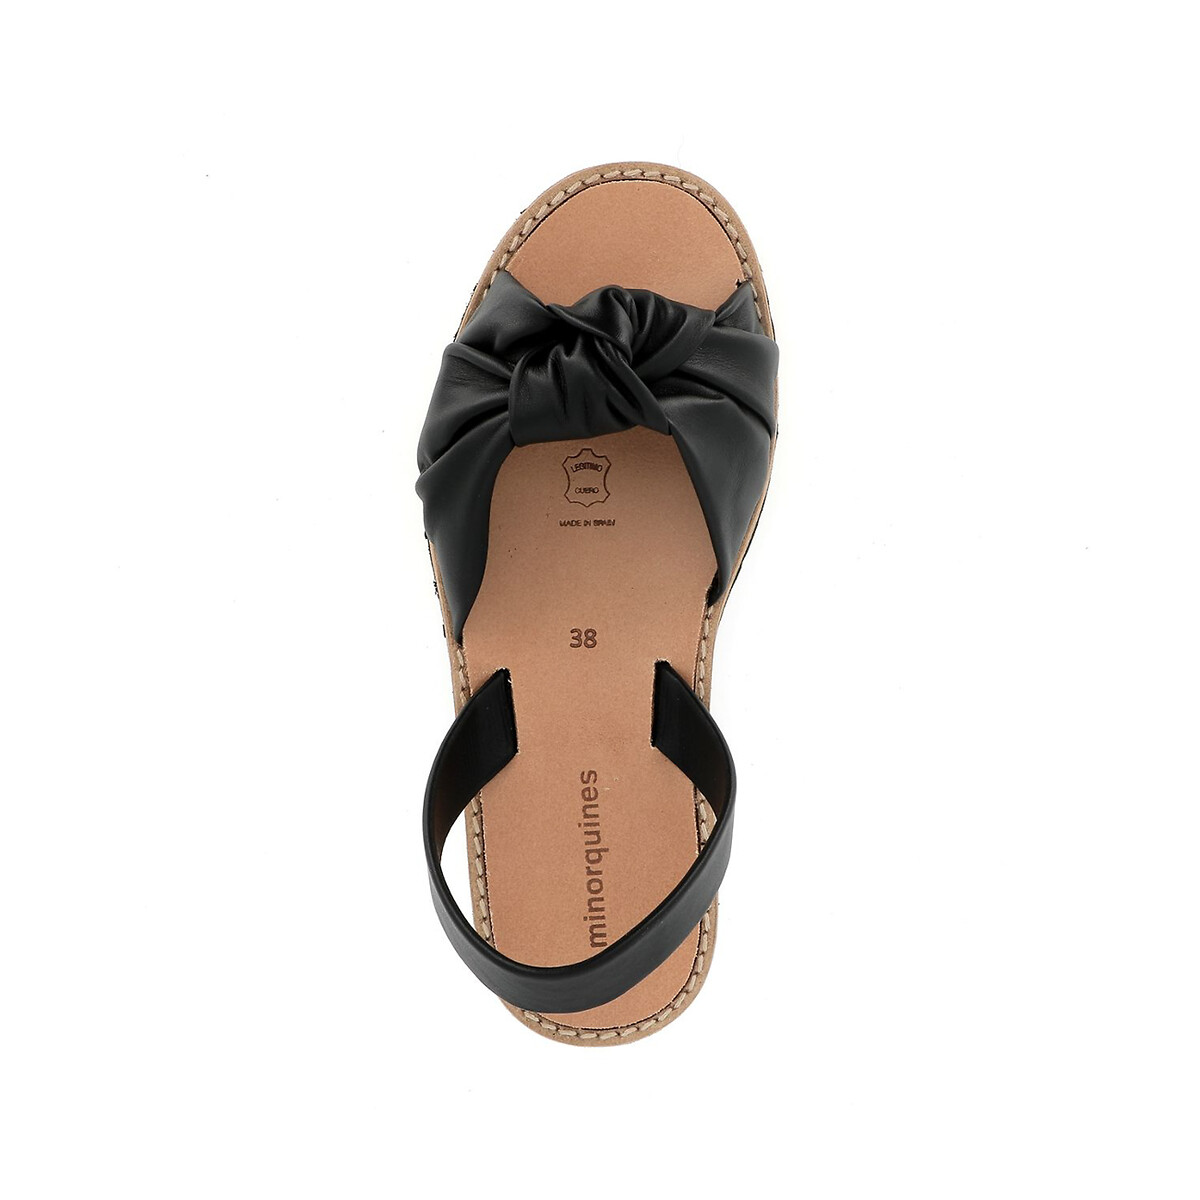 Сандалии MINORQUINES Из кожи на плоском каблуке AVARCA BAHIA 38 черный, размер 38 - фото 3